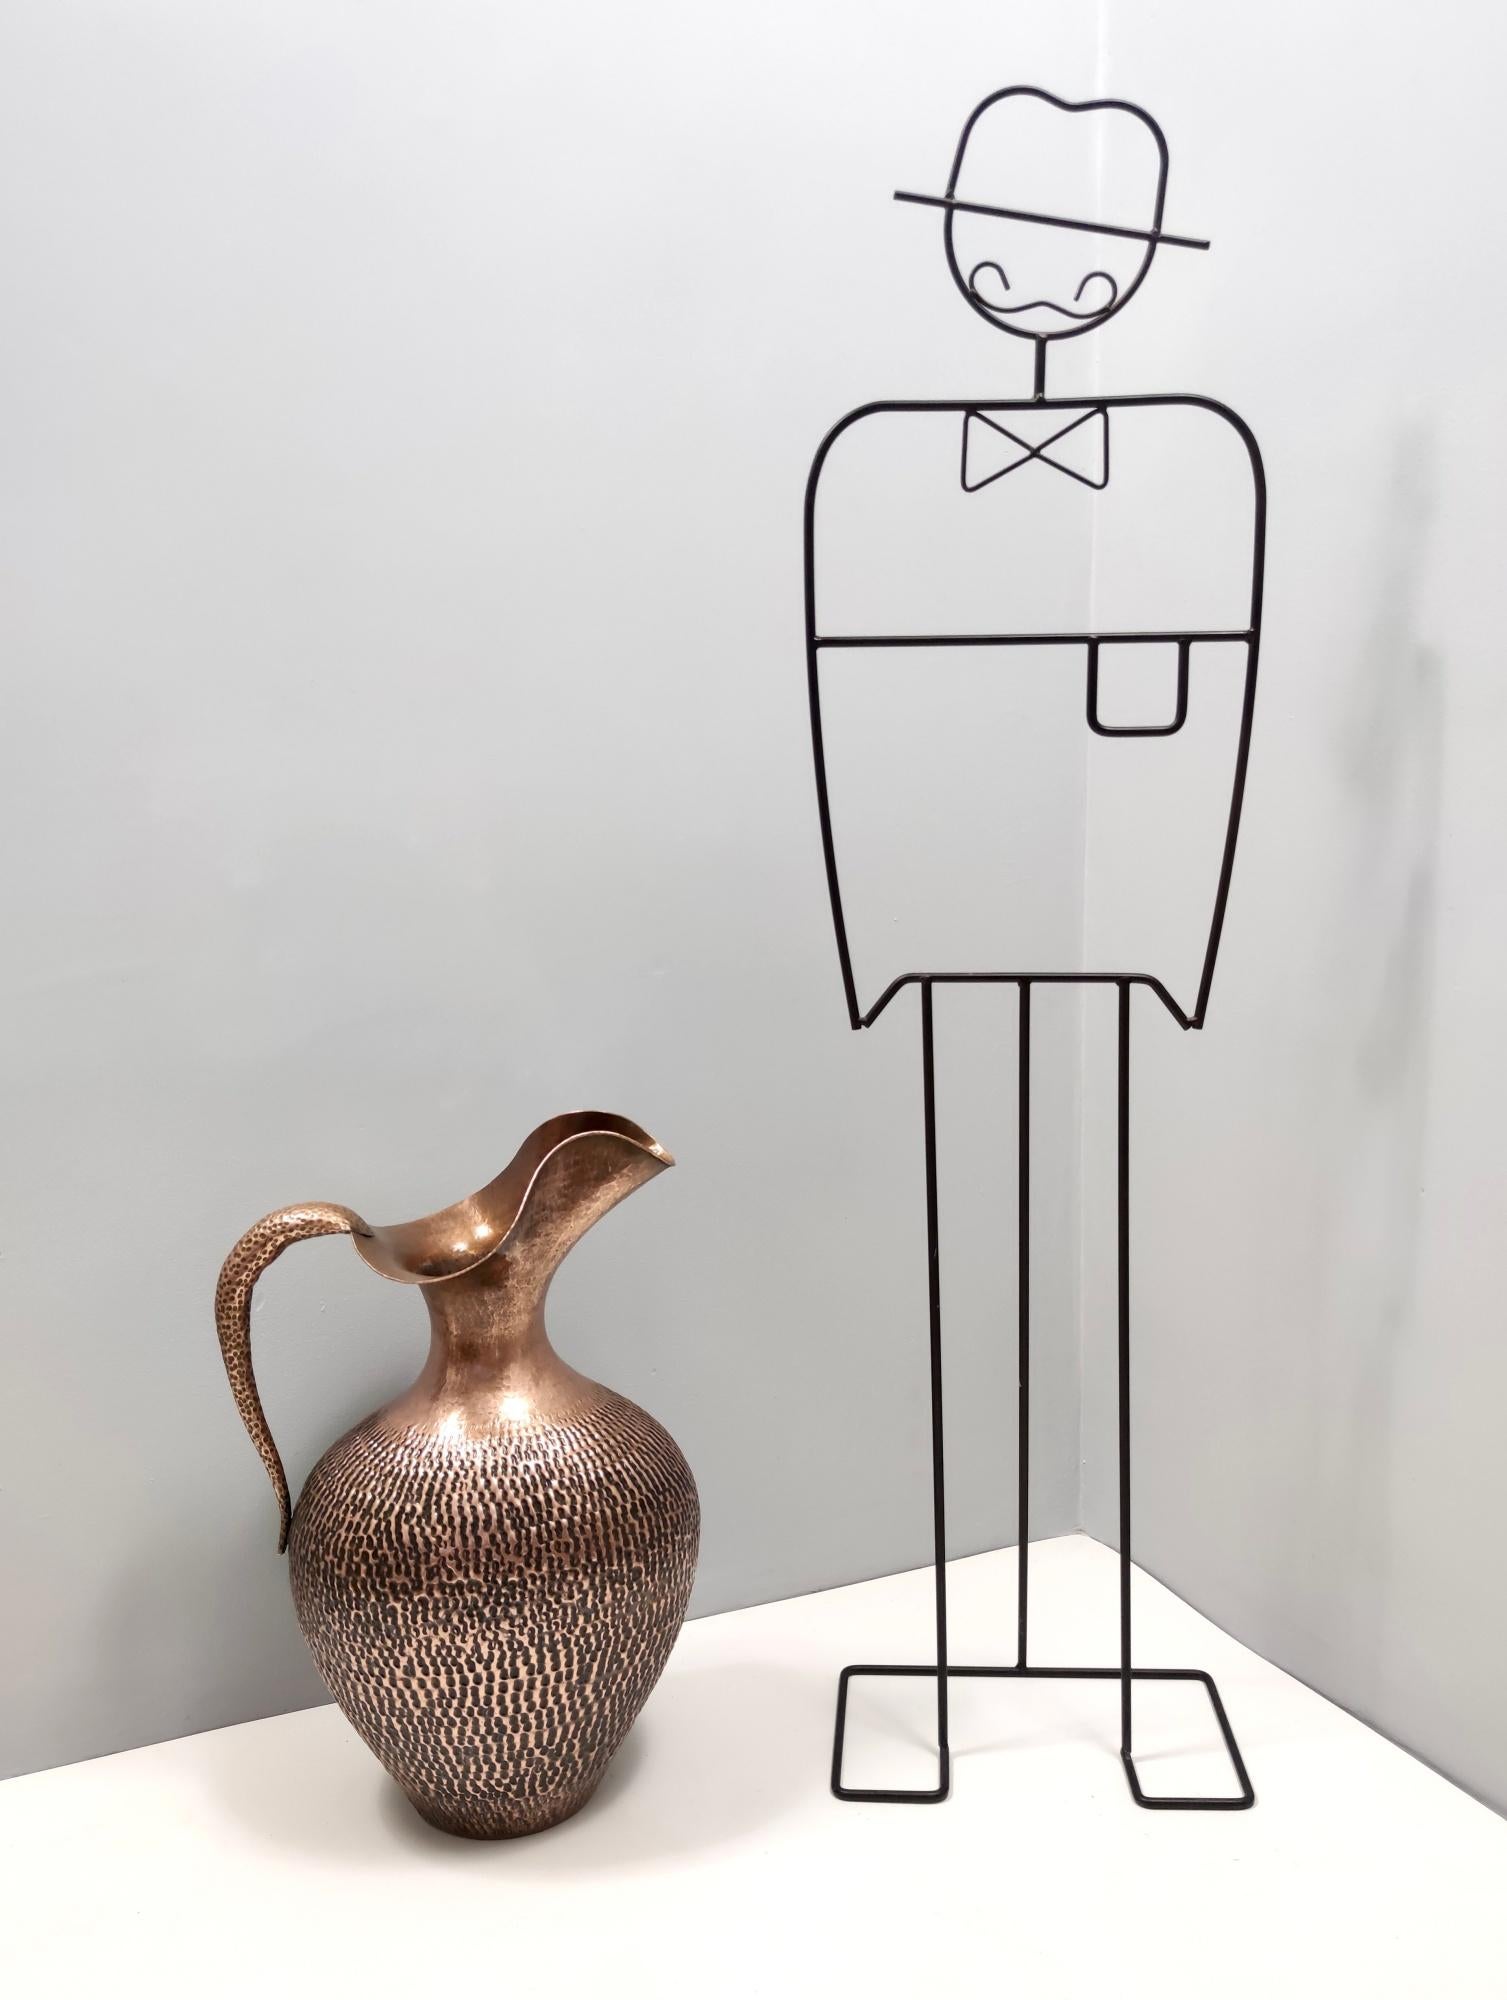 Fabriqué en Italie, années 1950.
Ce vase-pichet, qui peut également servir de porte-parapluie, est réalisé en cuivre repoussé. 
Son design minimal et classique, mais toujours moderne, incarne parfaitement l'esprit de l'époque. 
Il s'agit d'une pièce